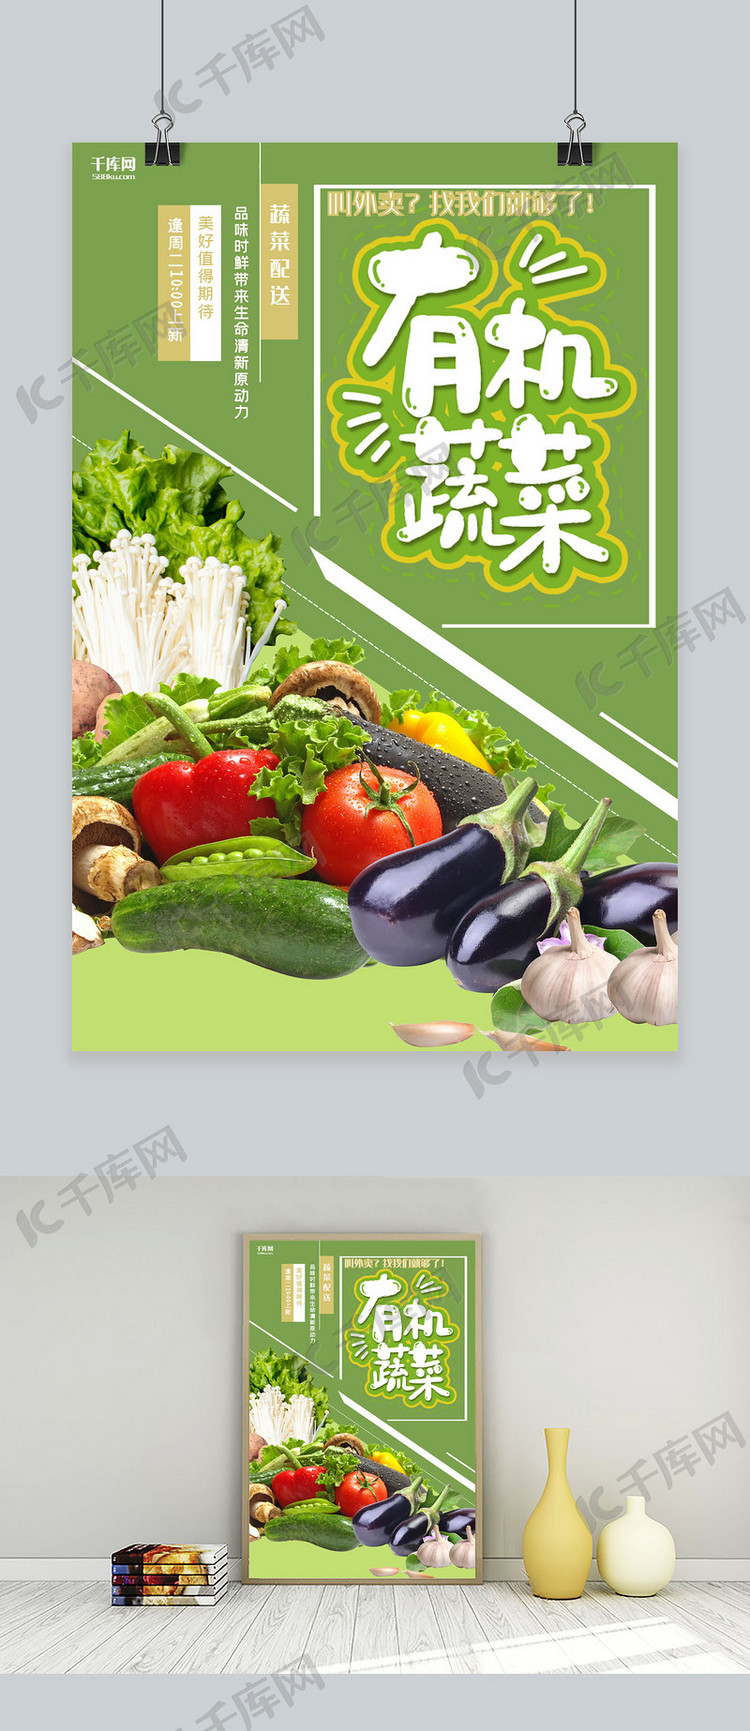 有机蔬菜蔬菜配送绿色创意海报